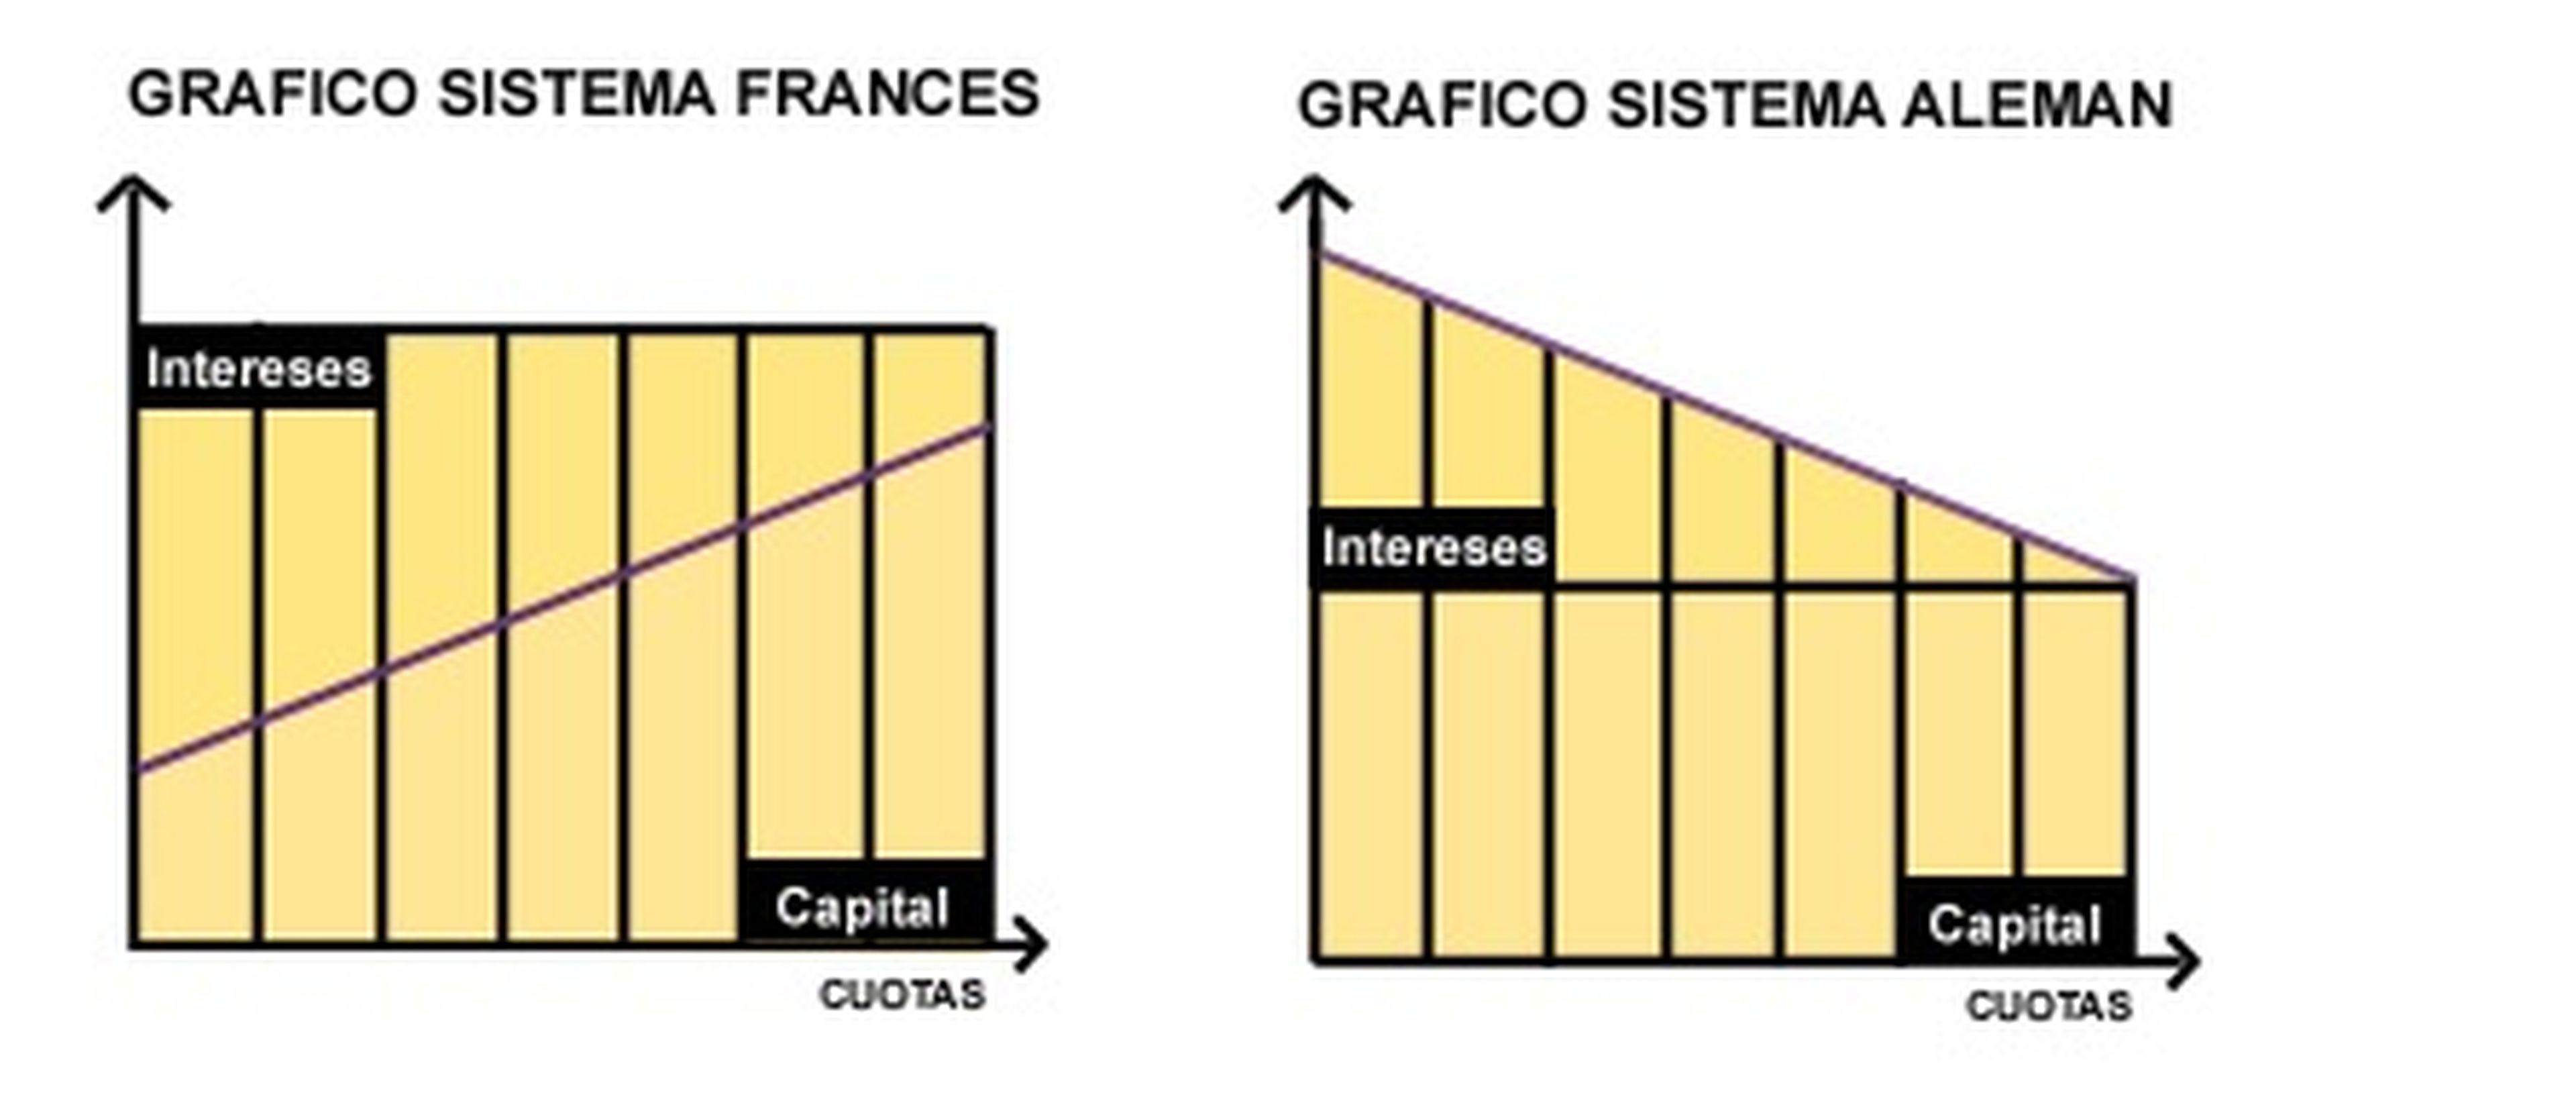 Sistema francés de amortización de hipoteca frente al sistema alemán